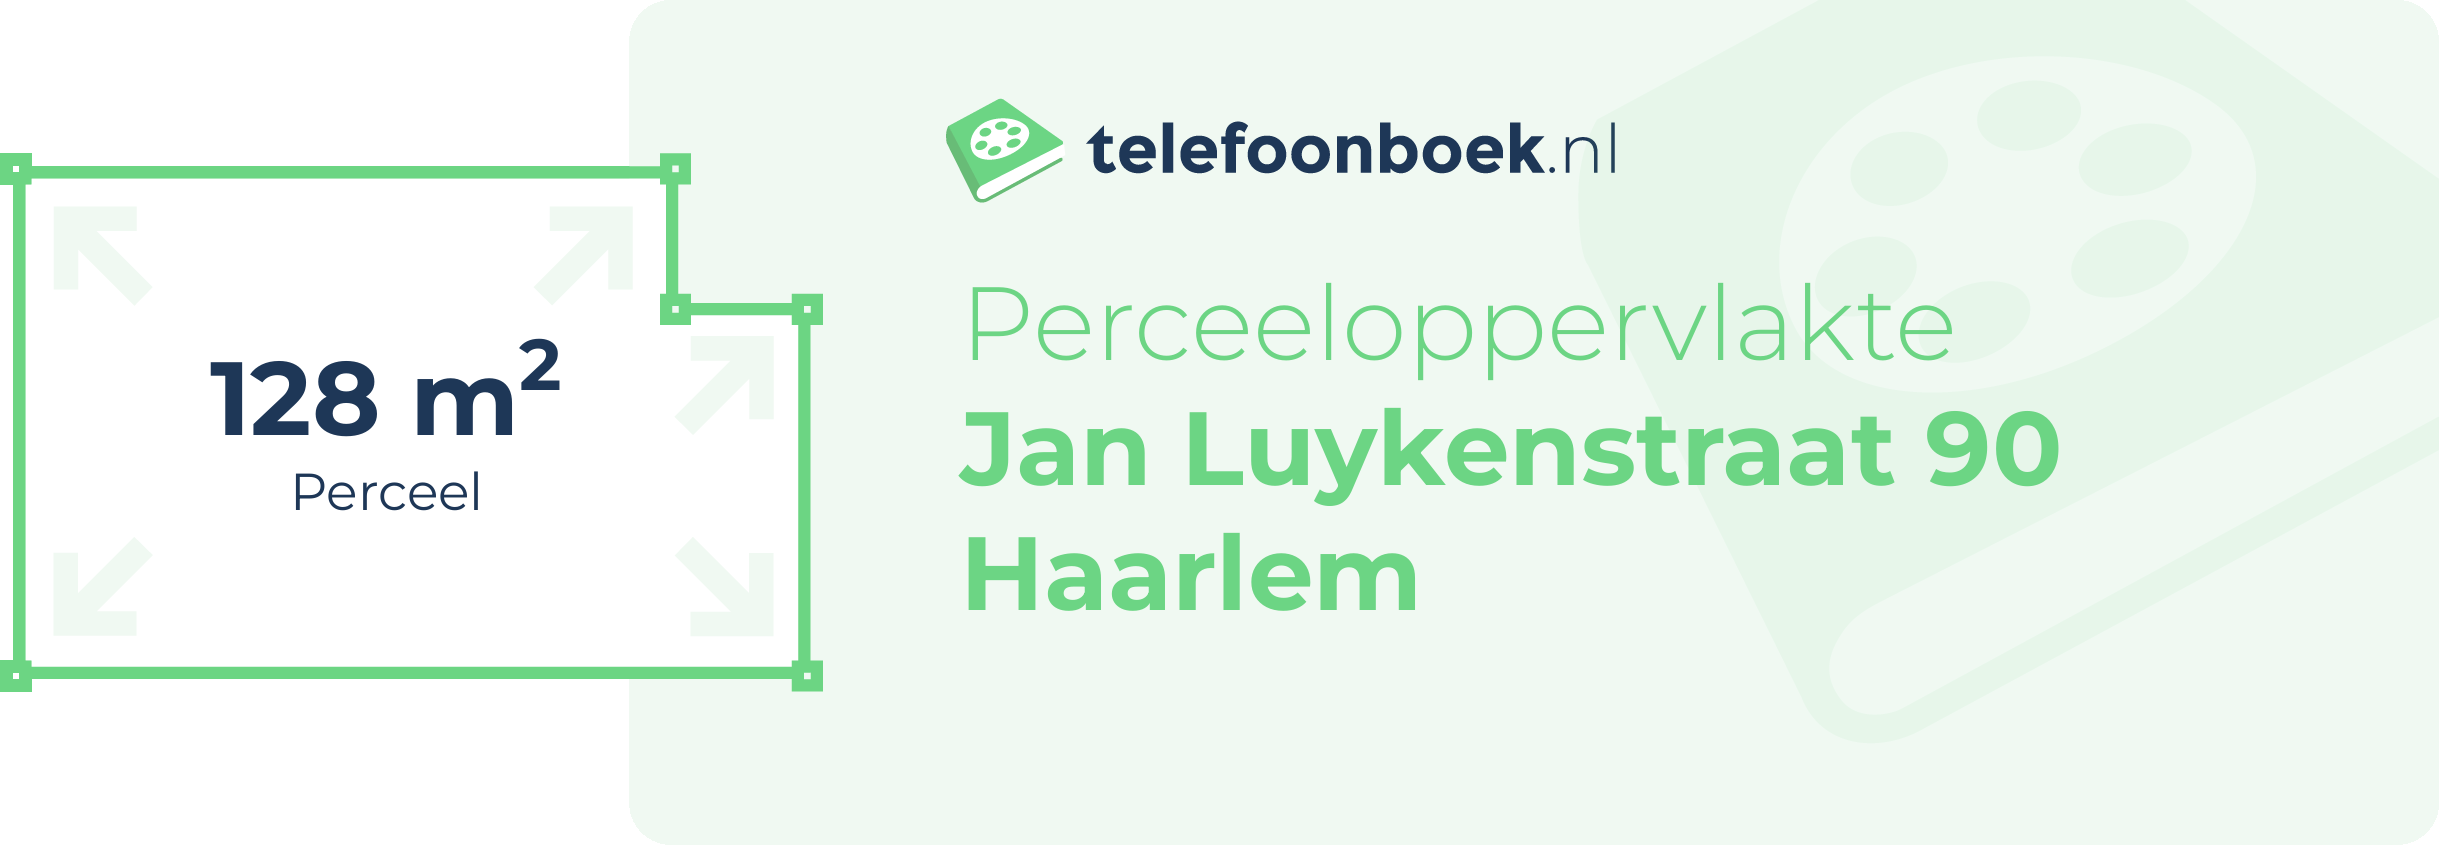 Perceeloppervlakte Jan Luykenstraat 90 Haarlem